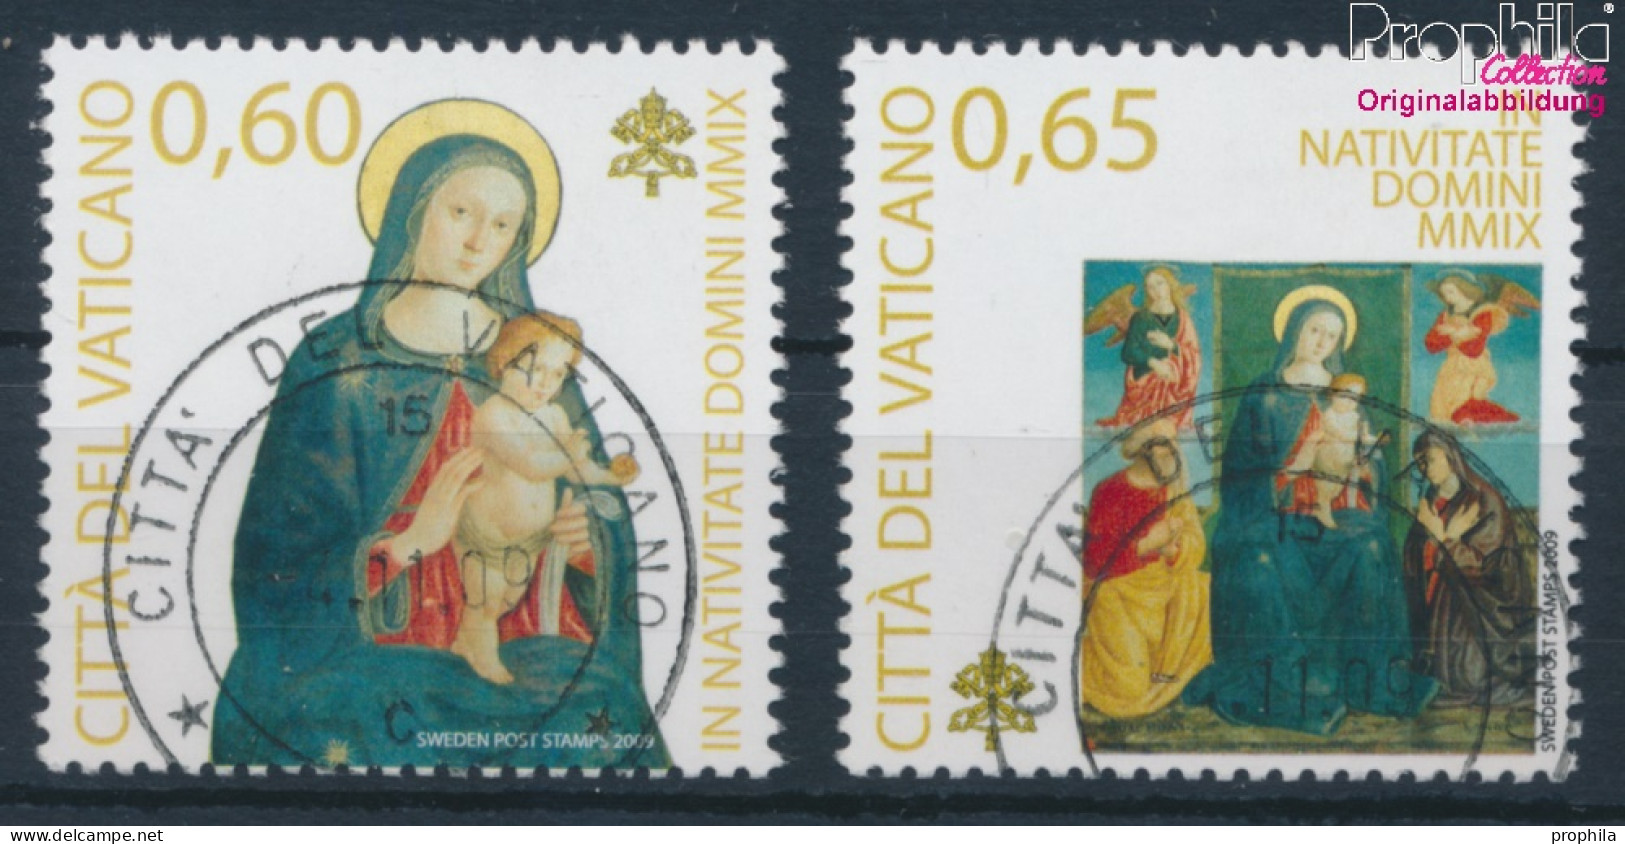 Vatikanstadt 1659-1660 (kompl.Ausg.) Gestempelt 2009 Weihnachten Gemälde (10406019 - Used Stamps